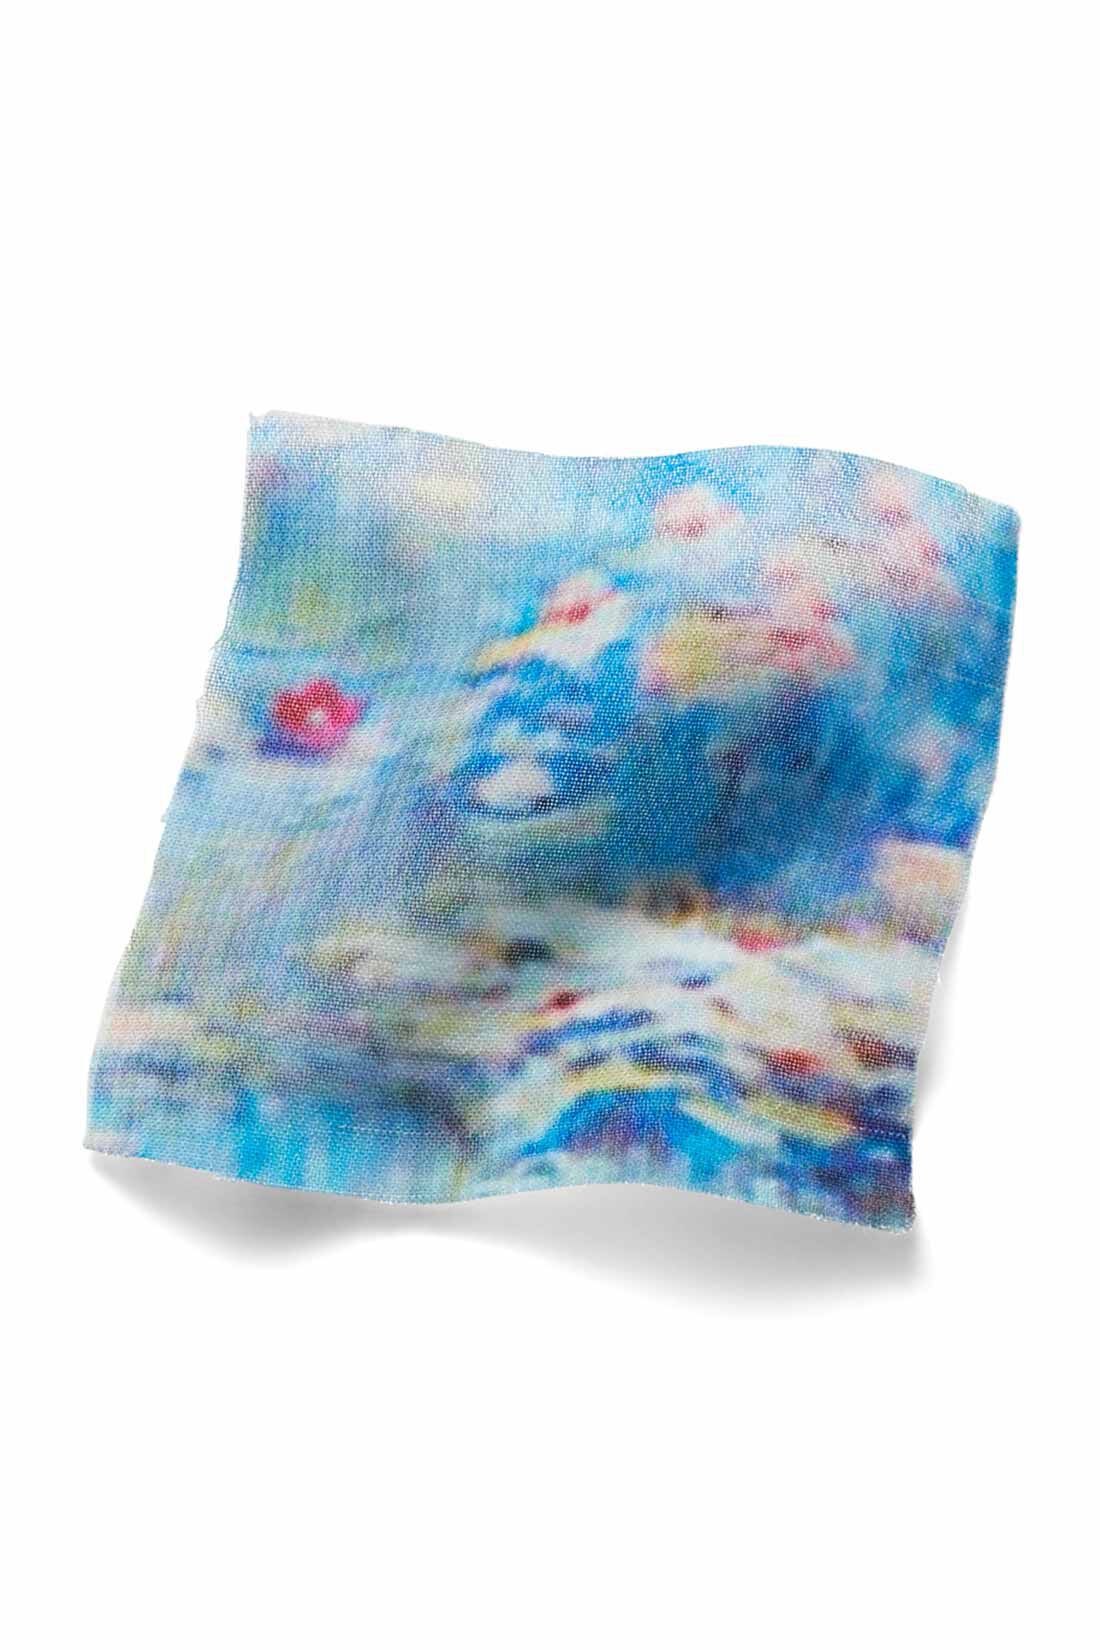 IEDIT[イディット]　モネの睡蓮をまとうシフォンスカート〈ブルー〉|原画をもとにパターンを起こし、水面を思わせる、透け感のあるシフォン素材にプリント。